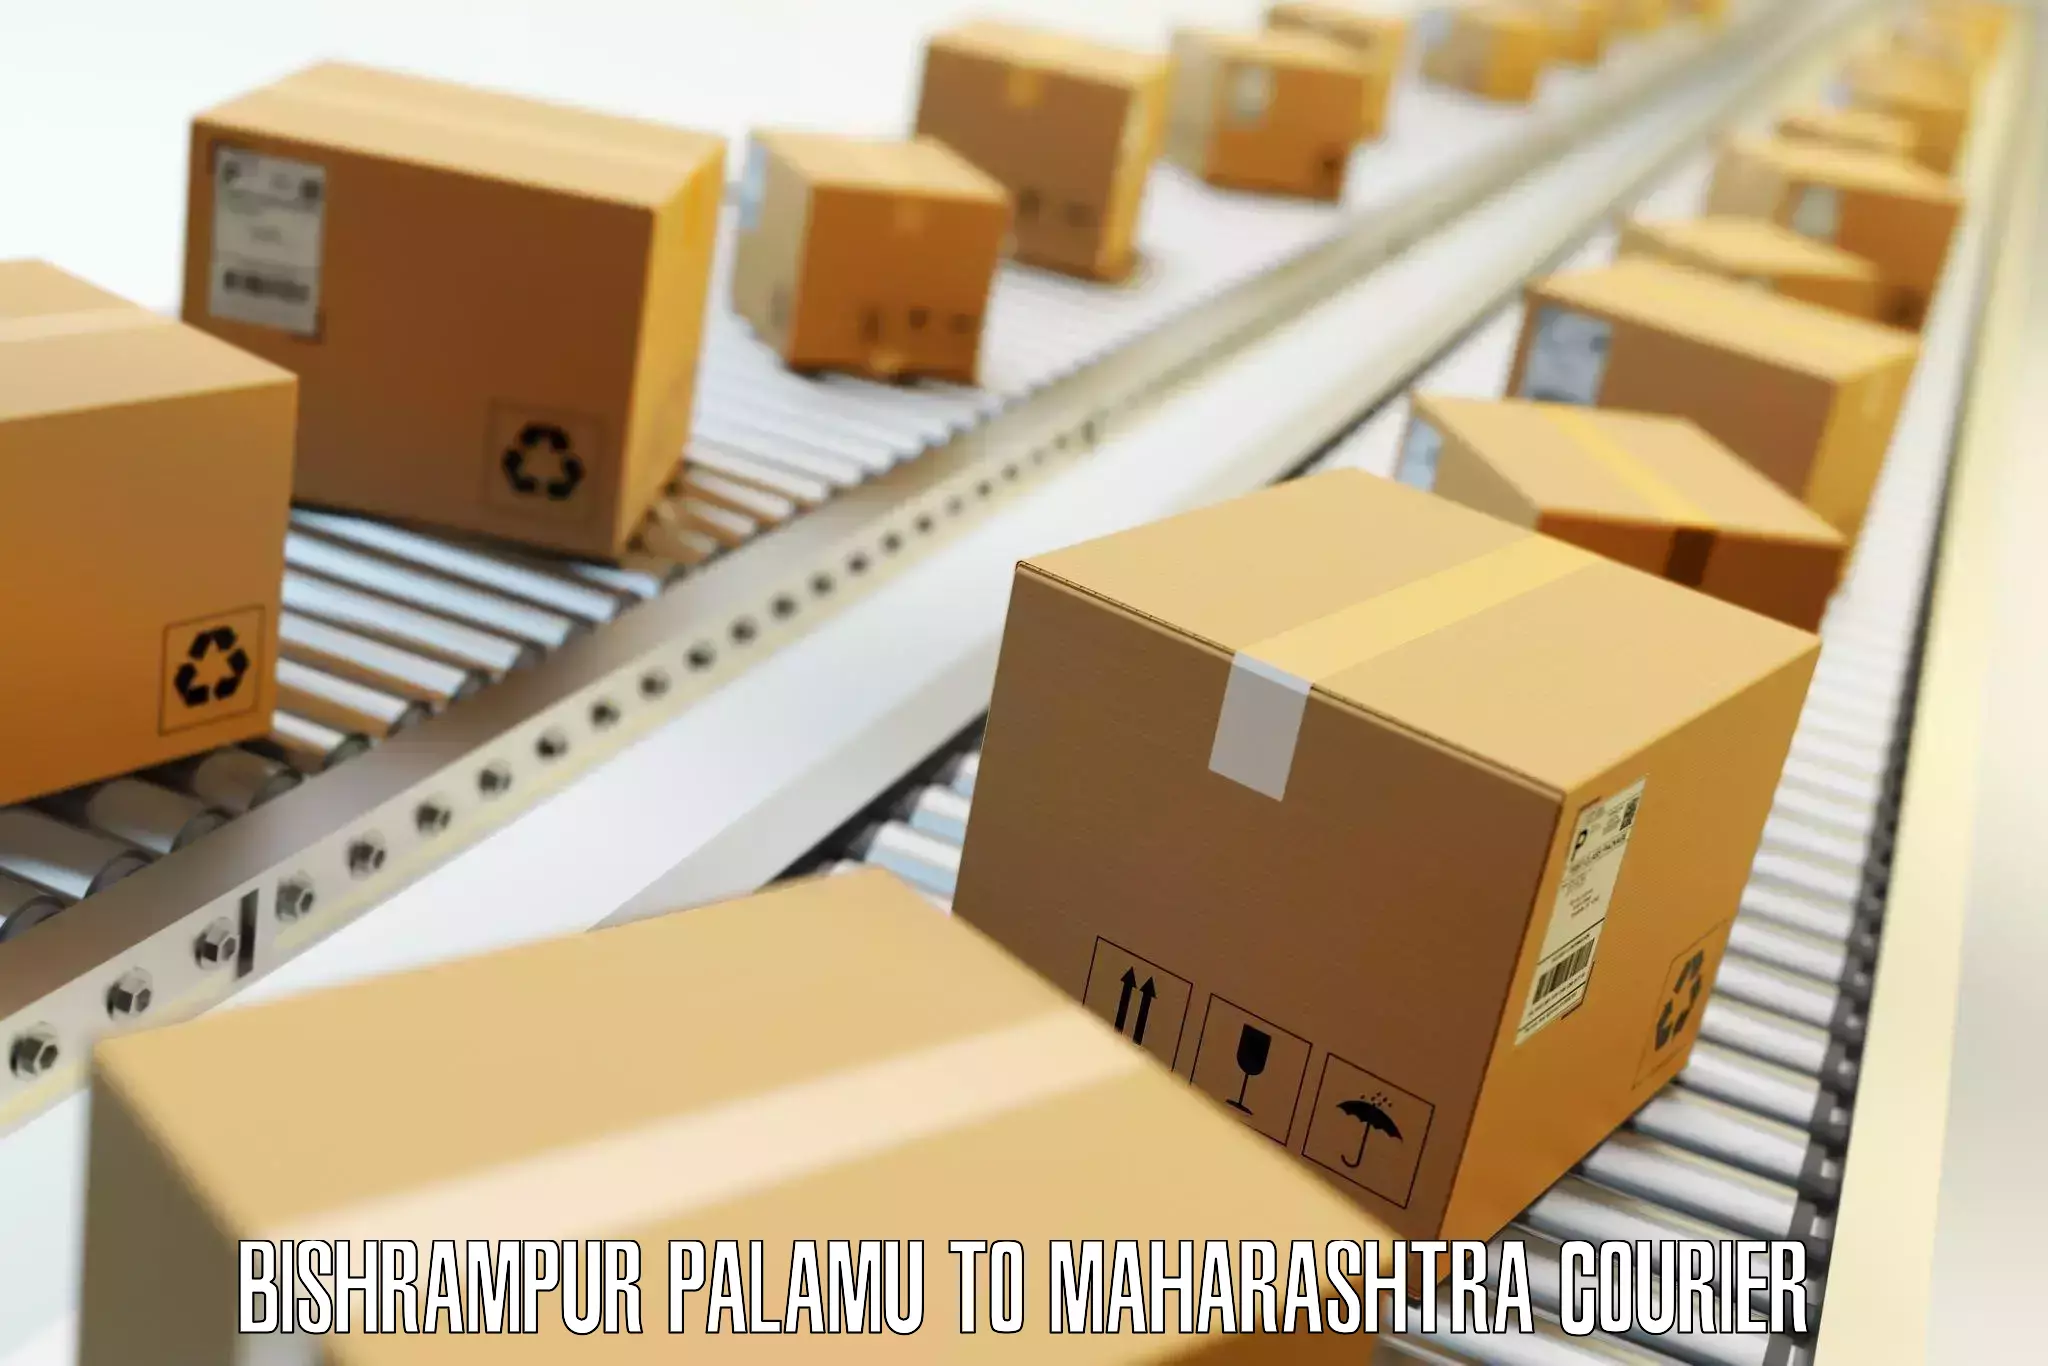 Luggage shipping specialists Bishrampur Palamu to Kandhar